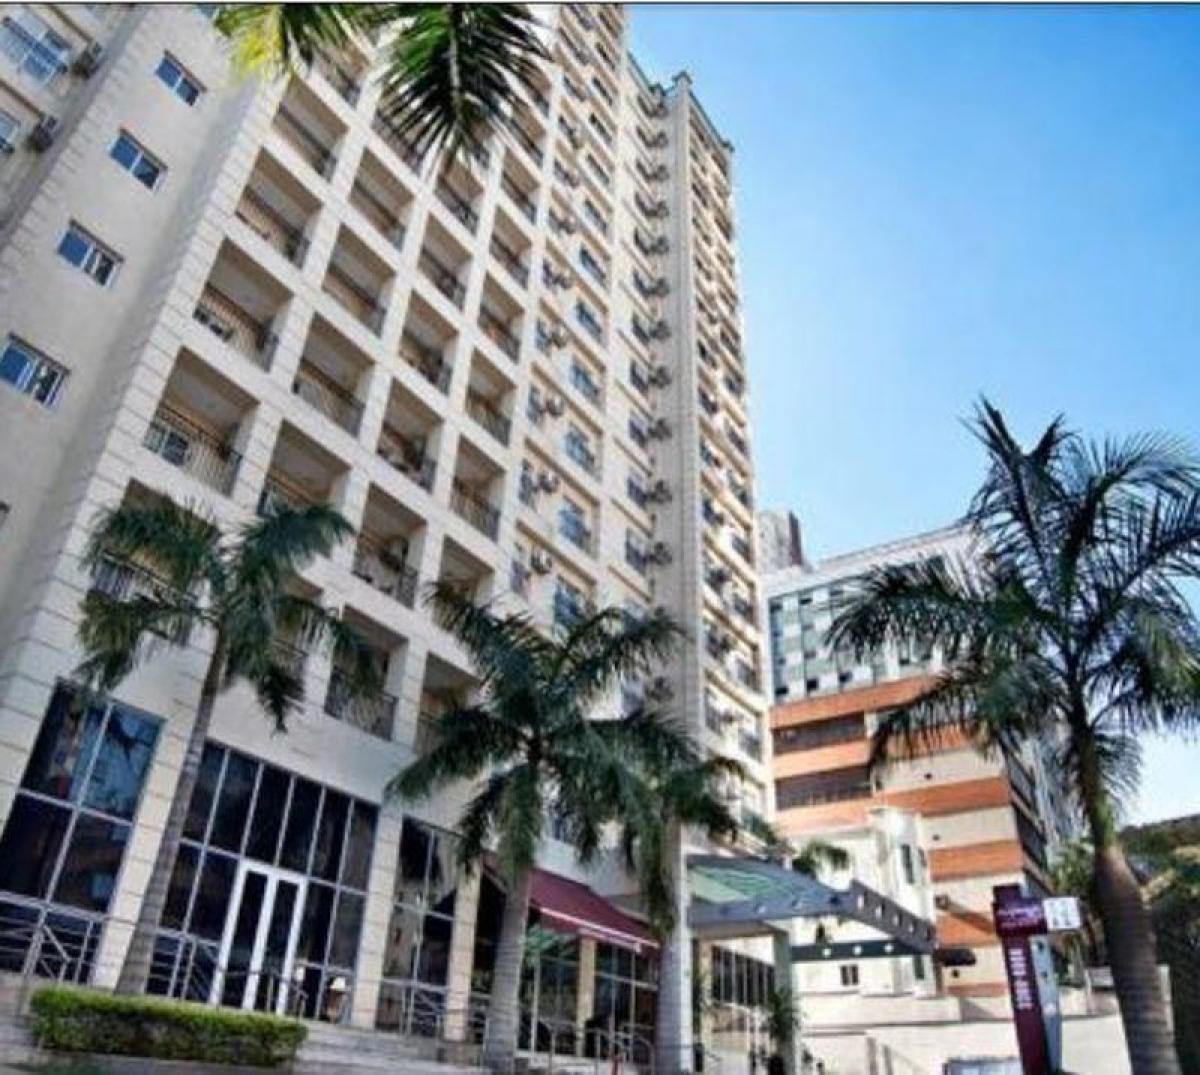 Picture of Hotel For Sale in Sao Paulo, Sao Paulo, Brazil